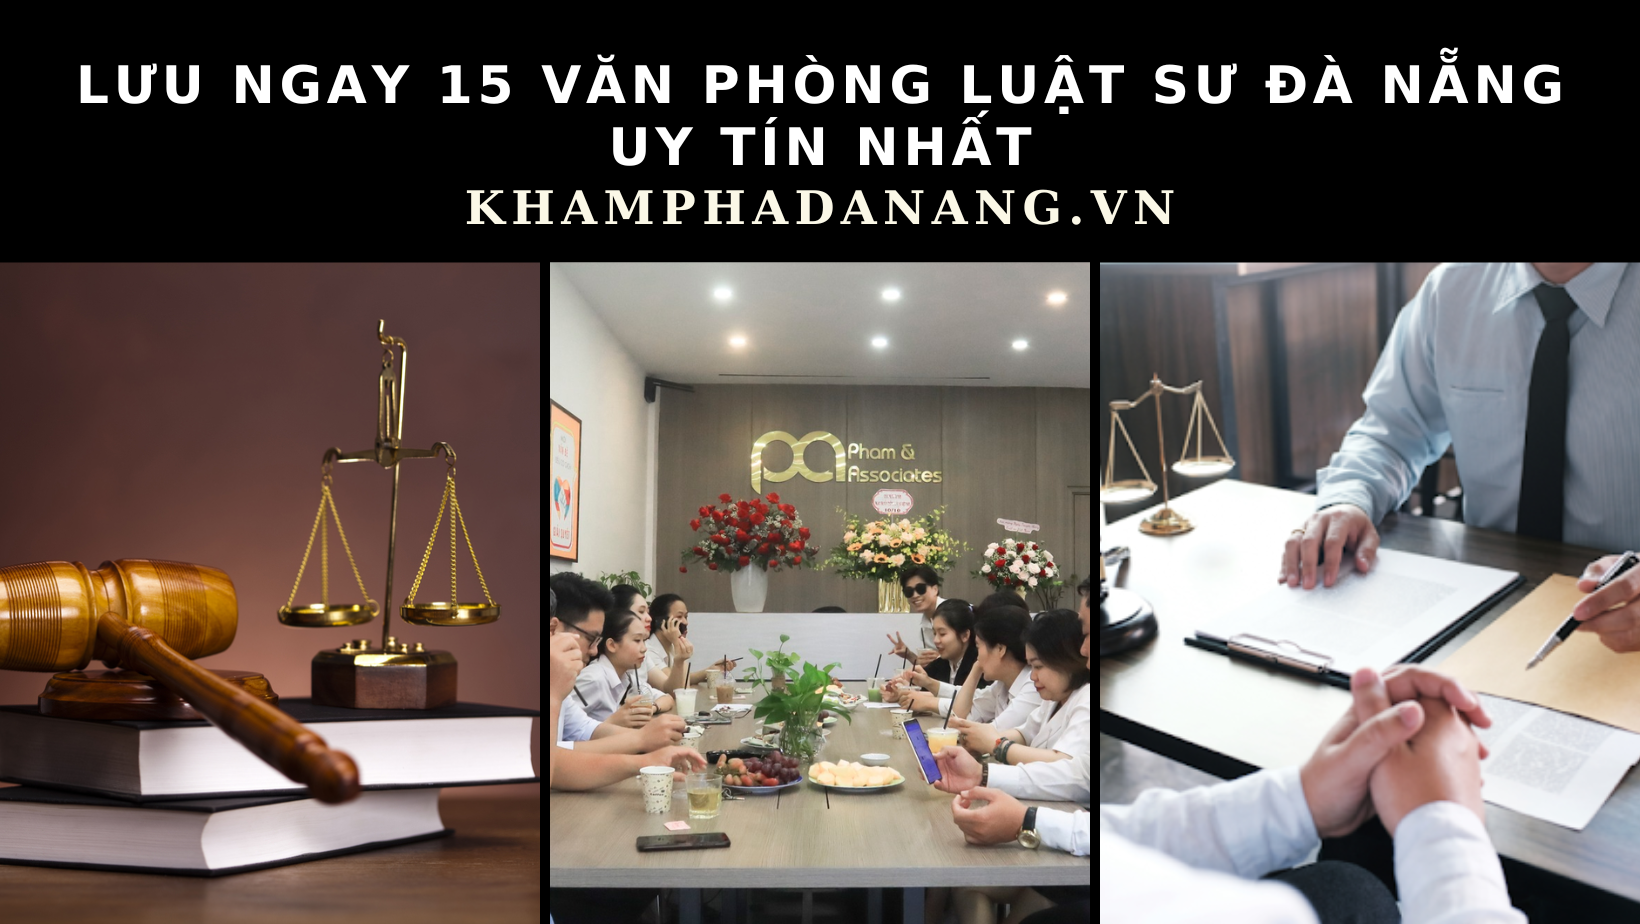 Lưu ngay 15 văn phòng luật sư Đà Nẵng uy tín nhất